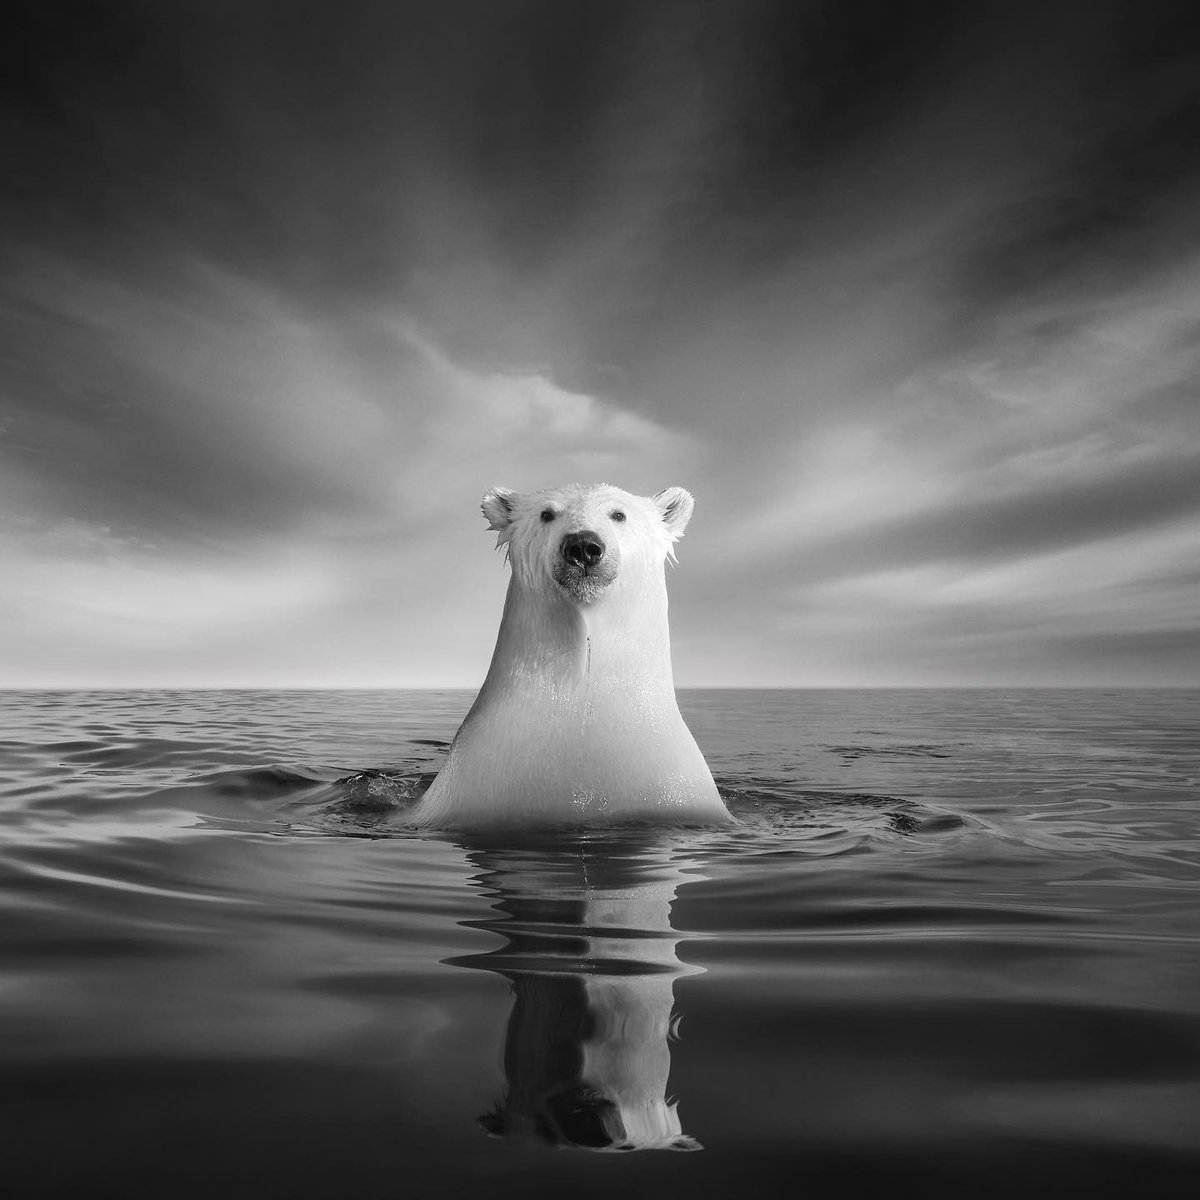 Saviez-vous que les ours polaires pourraient disparaître de la banquise d'ici à 2100 ?

📸 Kyriakos Kaziras 

Canon EOS 5D Mark III
Objectif : EF 24-105mm f/4 L IS USM
Distance focale : 24mm
Ouverture : f/13
Vitesse : 1/640s
ISO : 640

#CanonFrance
#LiveForTheStory